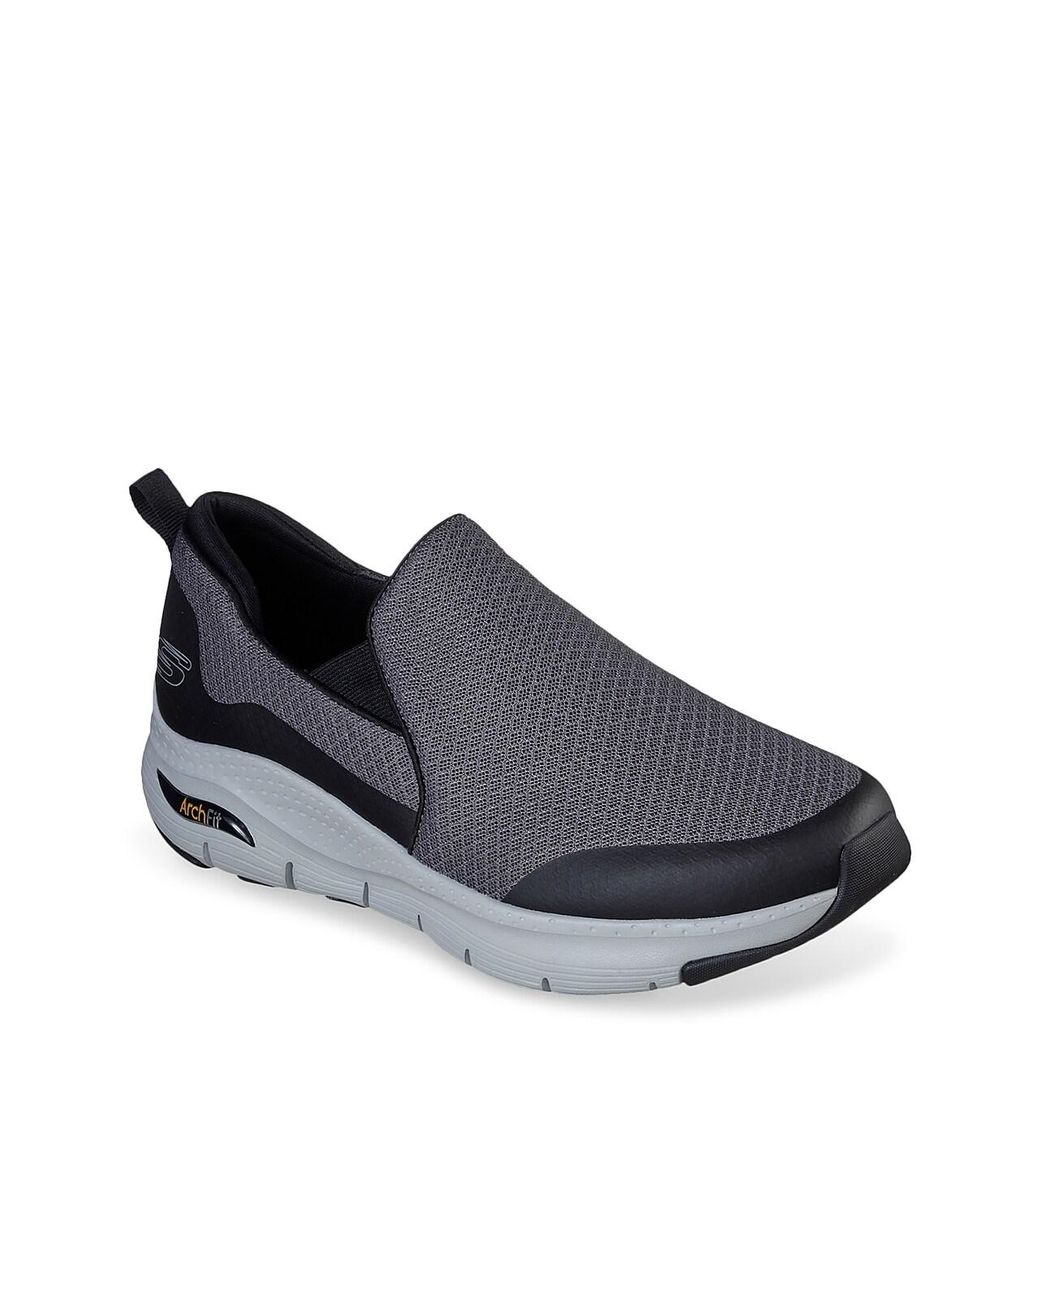 Skechers Synthetic Arch Fit Banlin Slip-on Sneaker in Grey/Black (Gray ...